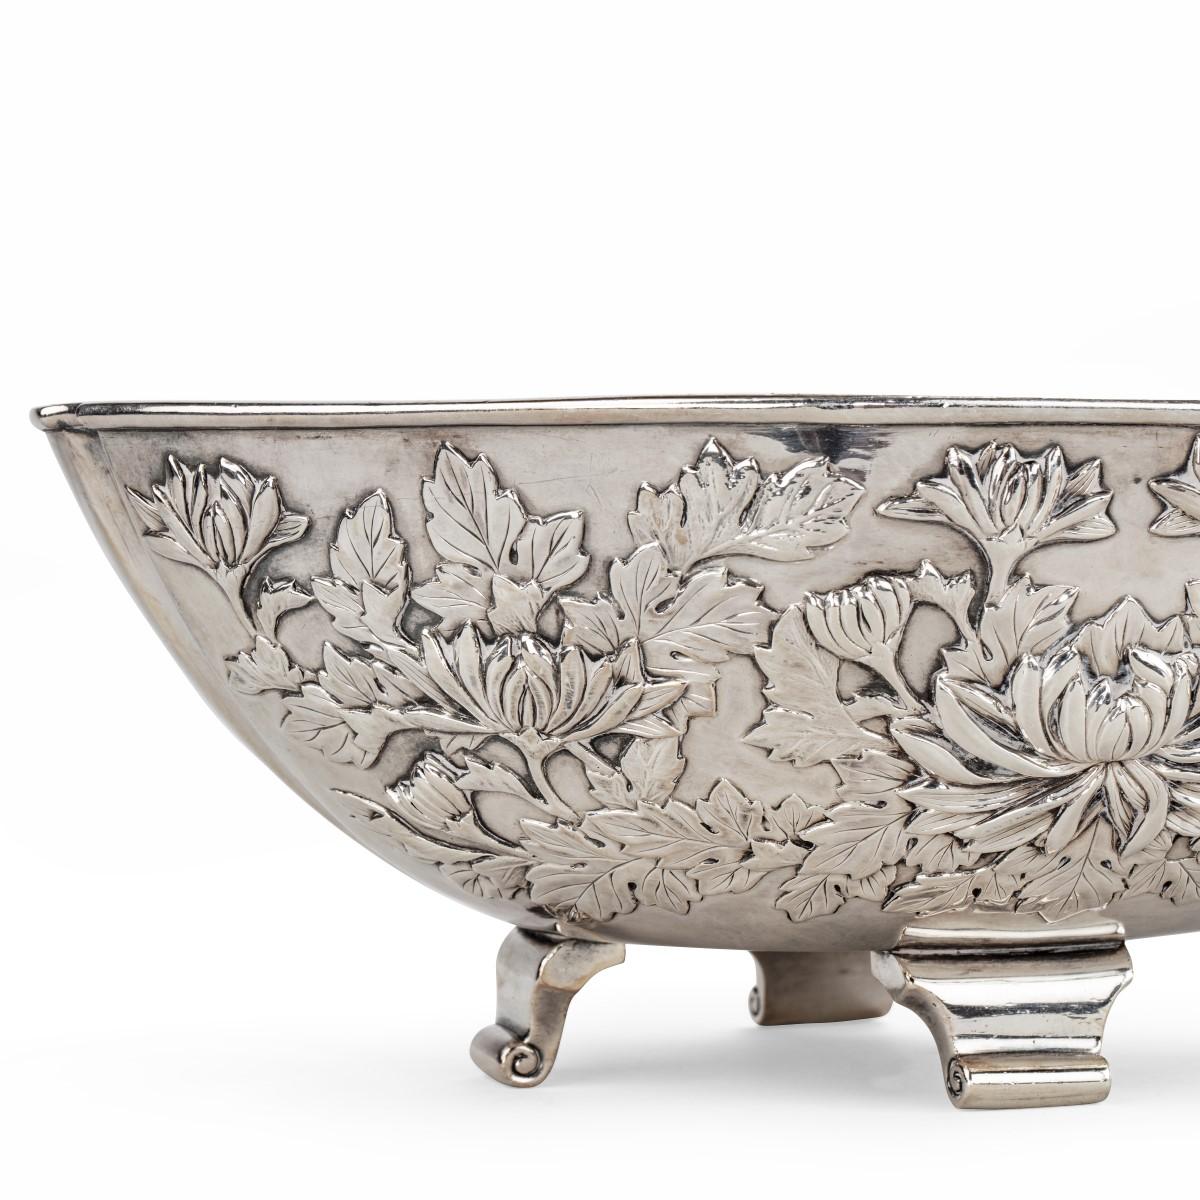 Meiji period solid silver bowls by Eigyoku